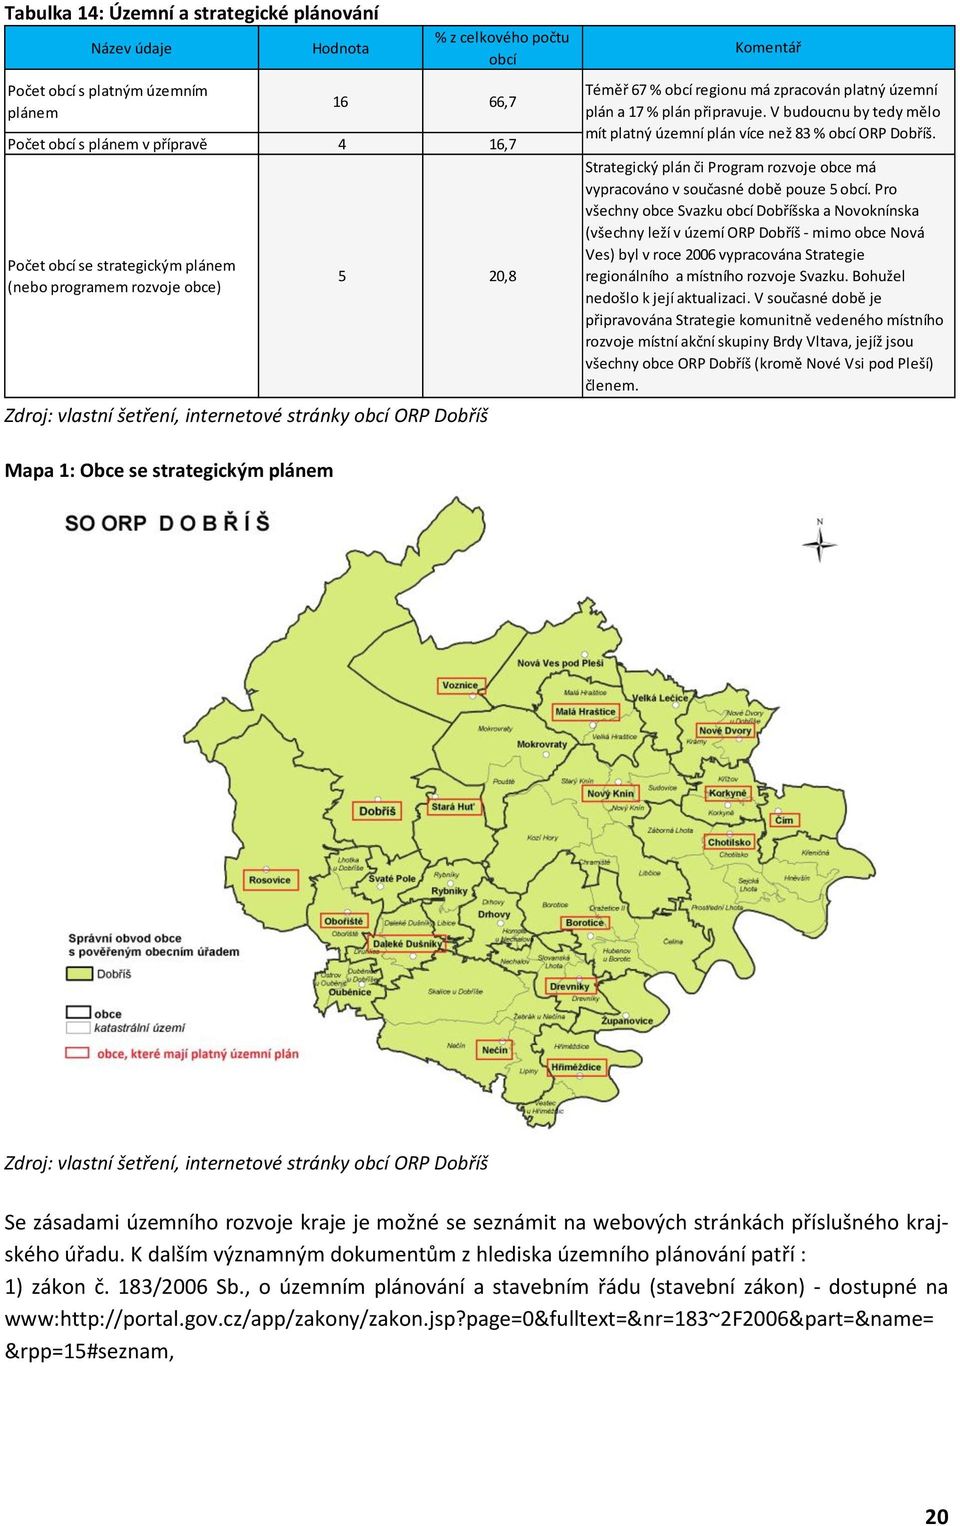 V budoucnu by tedy mělo mít platný územní plán více než 83 % obcí ORP Dobříš. Strategický plán či Program rozvoje obce má vypracováno v současné době pouze 5 obcí.